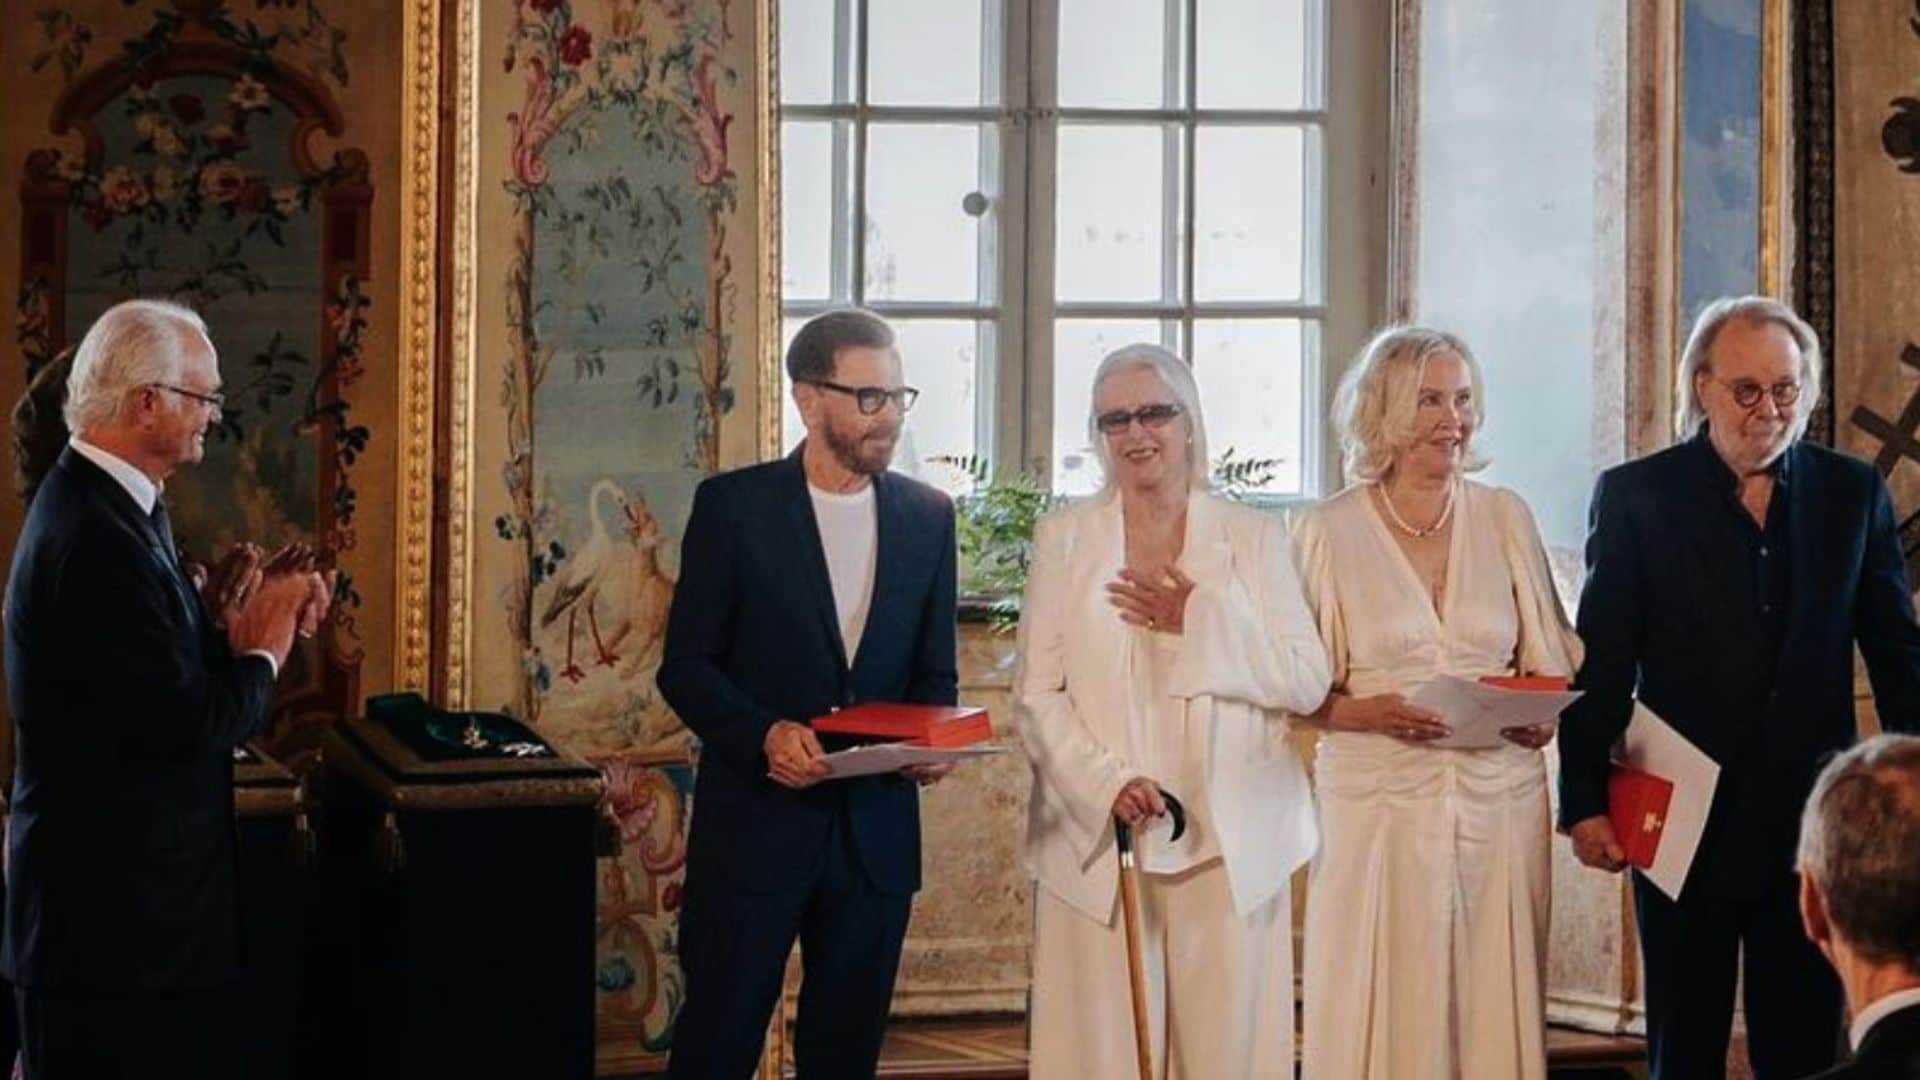 ABBA, juntos de nuevo y condecorados por los reyes de Suecia en el 50 aniversario de 'Waterloo'